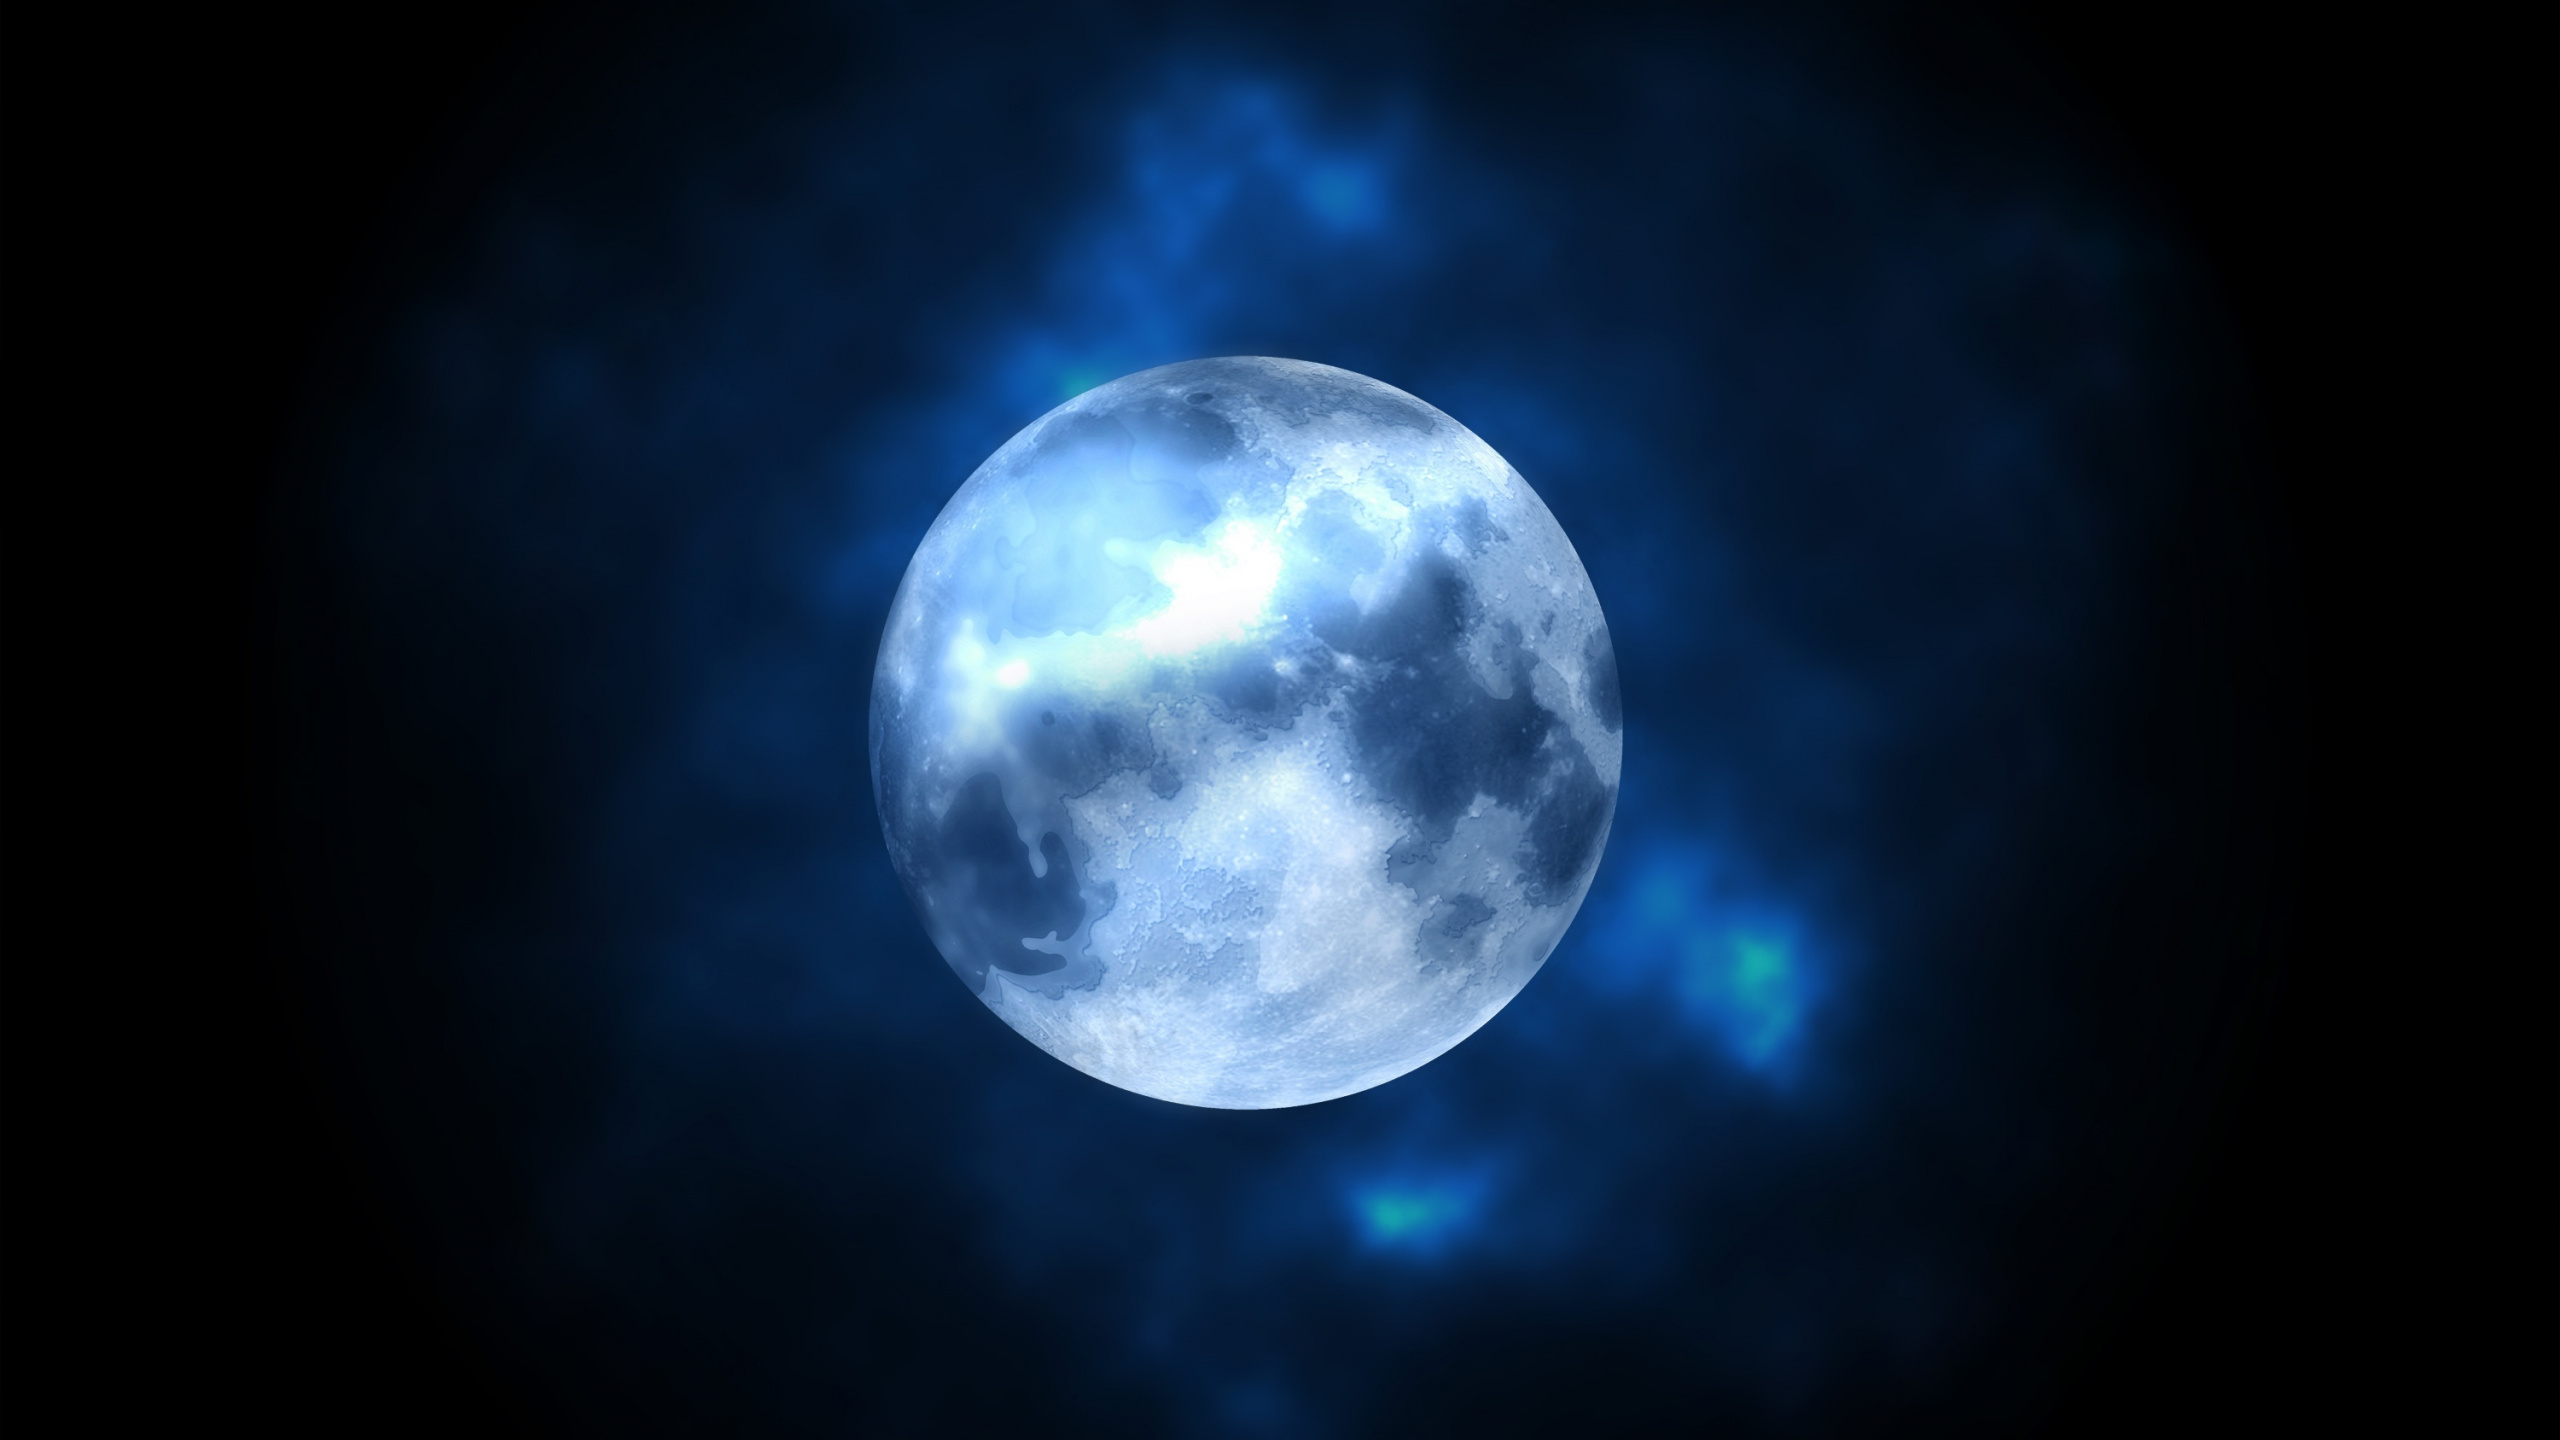 月亮, 性质, 气氛, 满月, 天文学对象 壁纸 2560x1440 允许